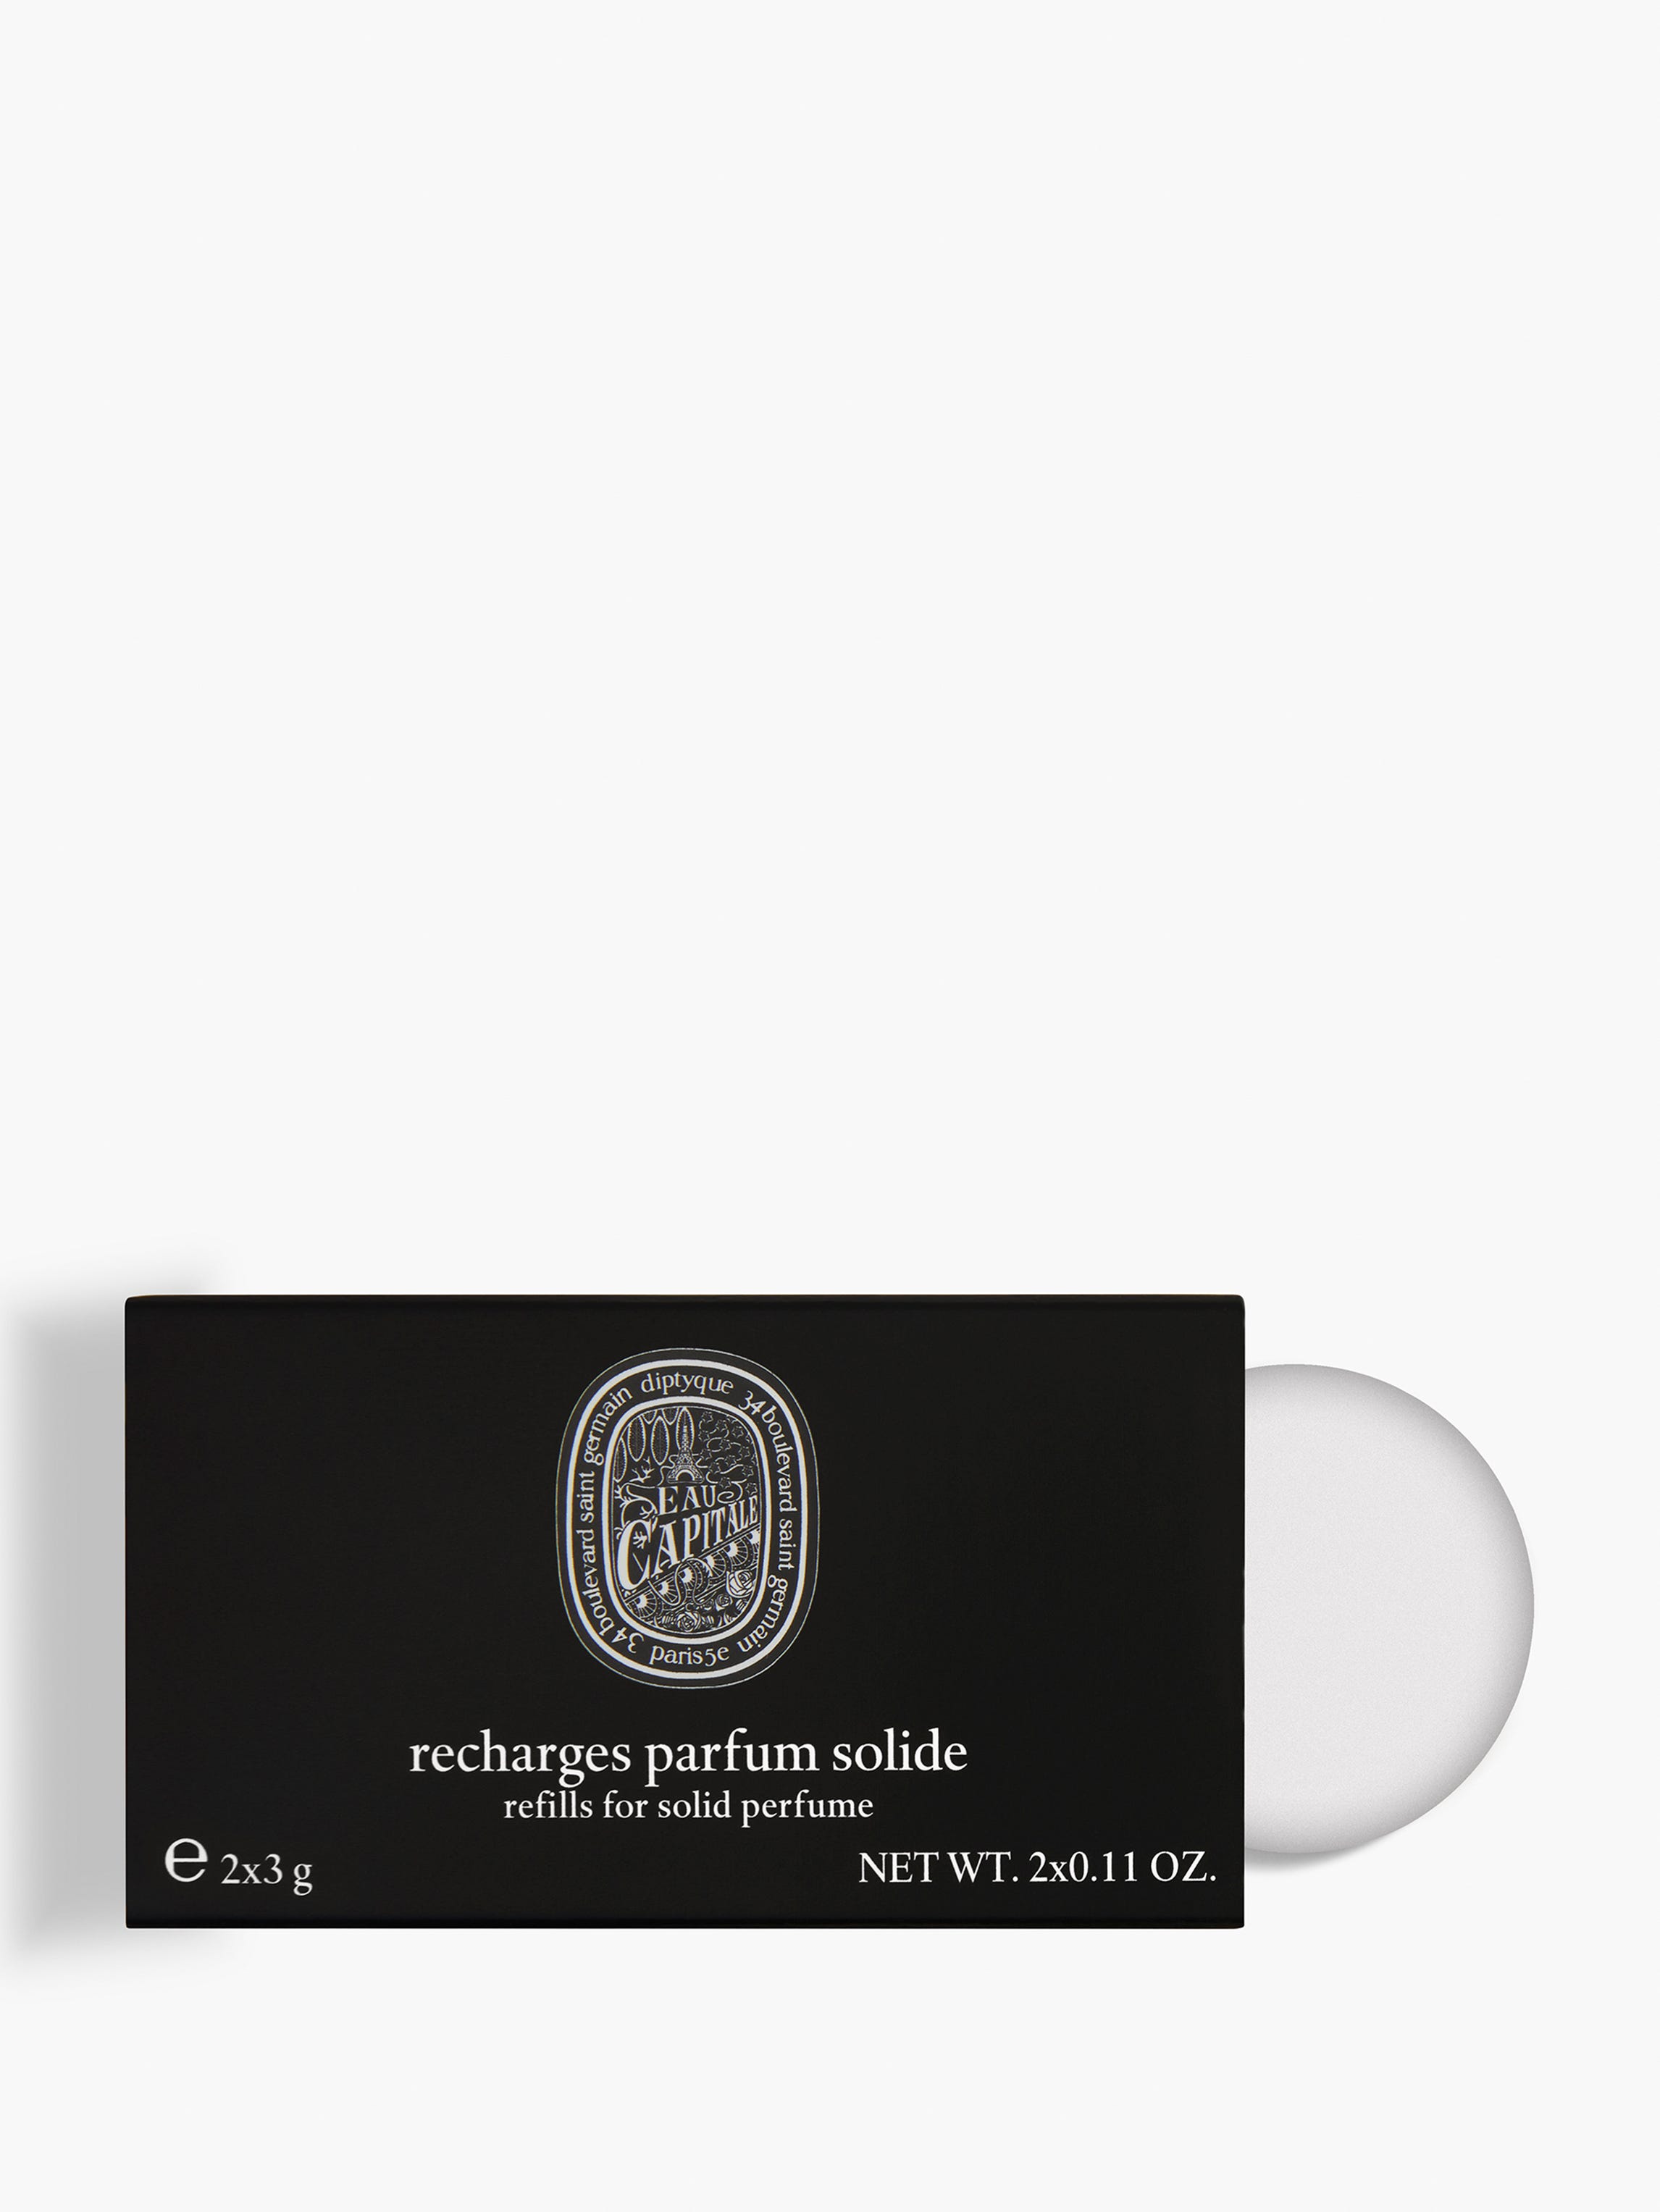 Eau Capitale refills for solid perfume 2x3g | Diptyque Paris